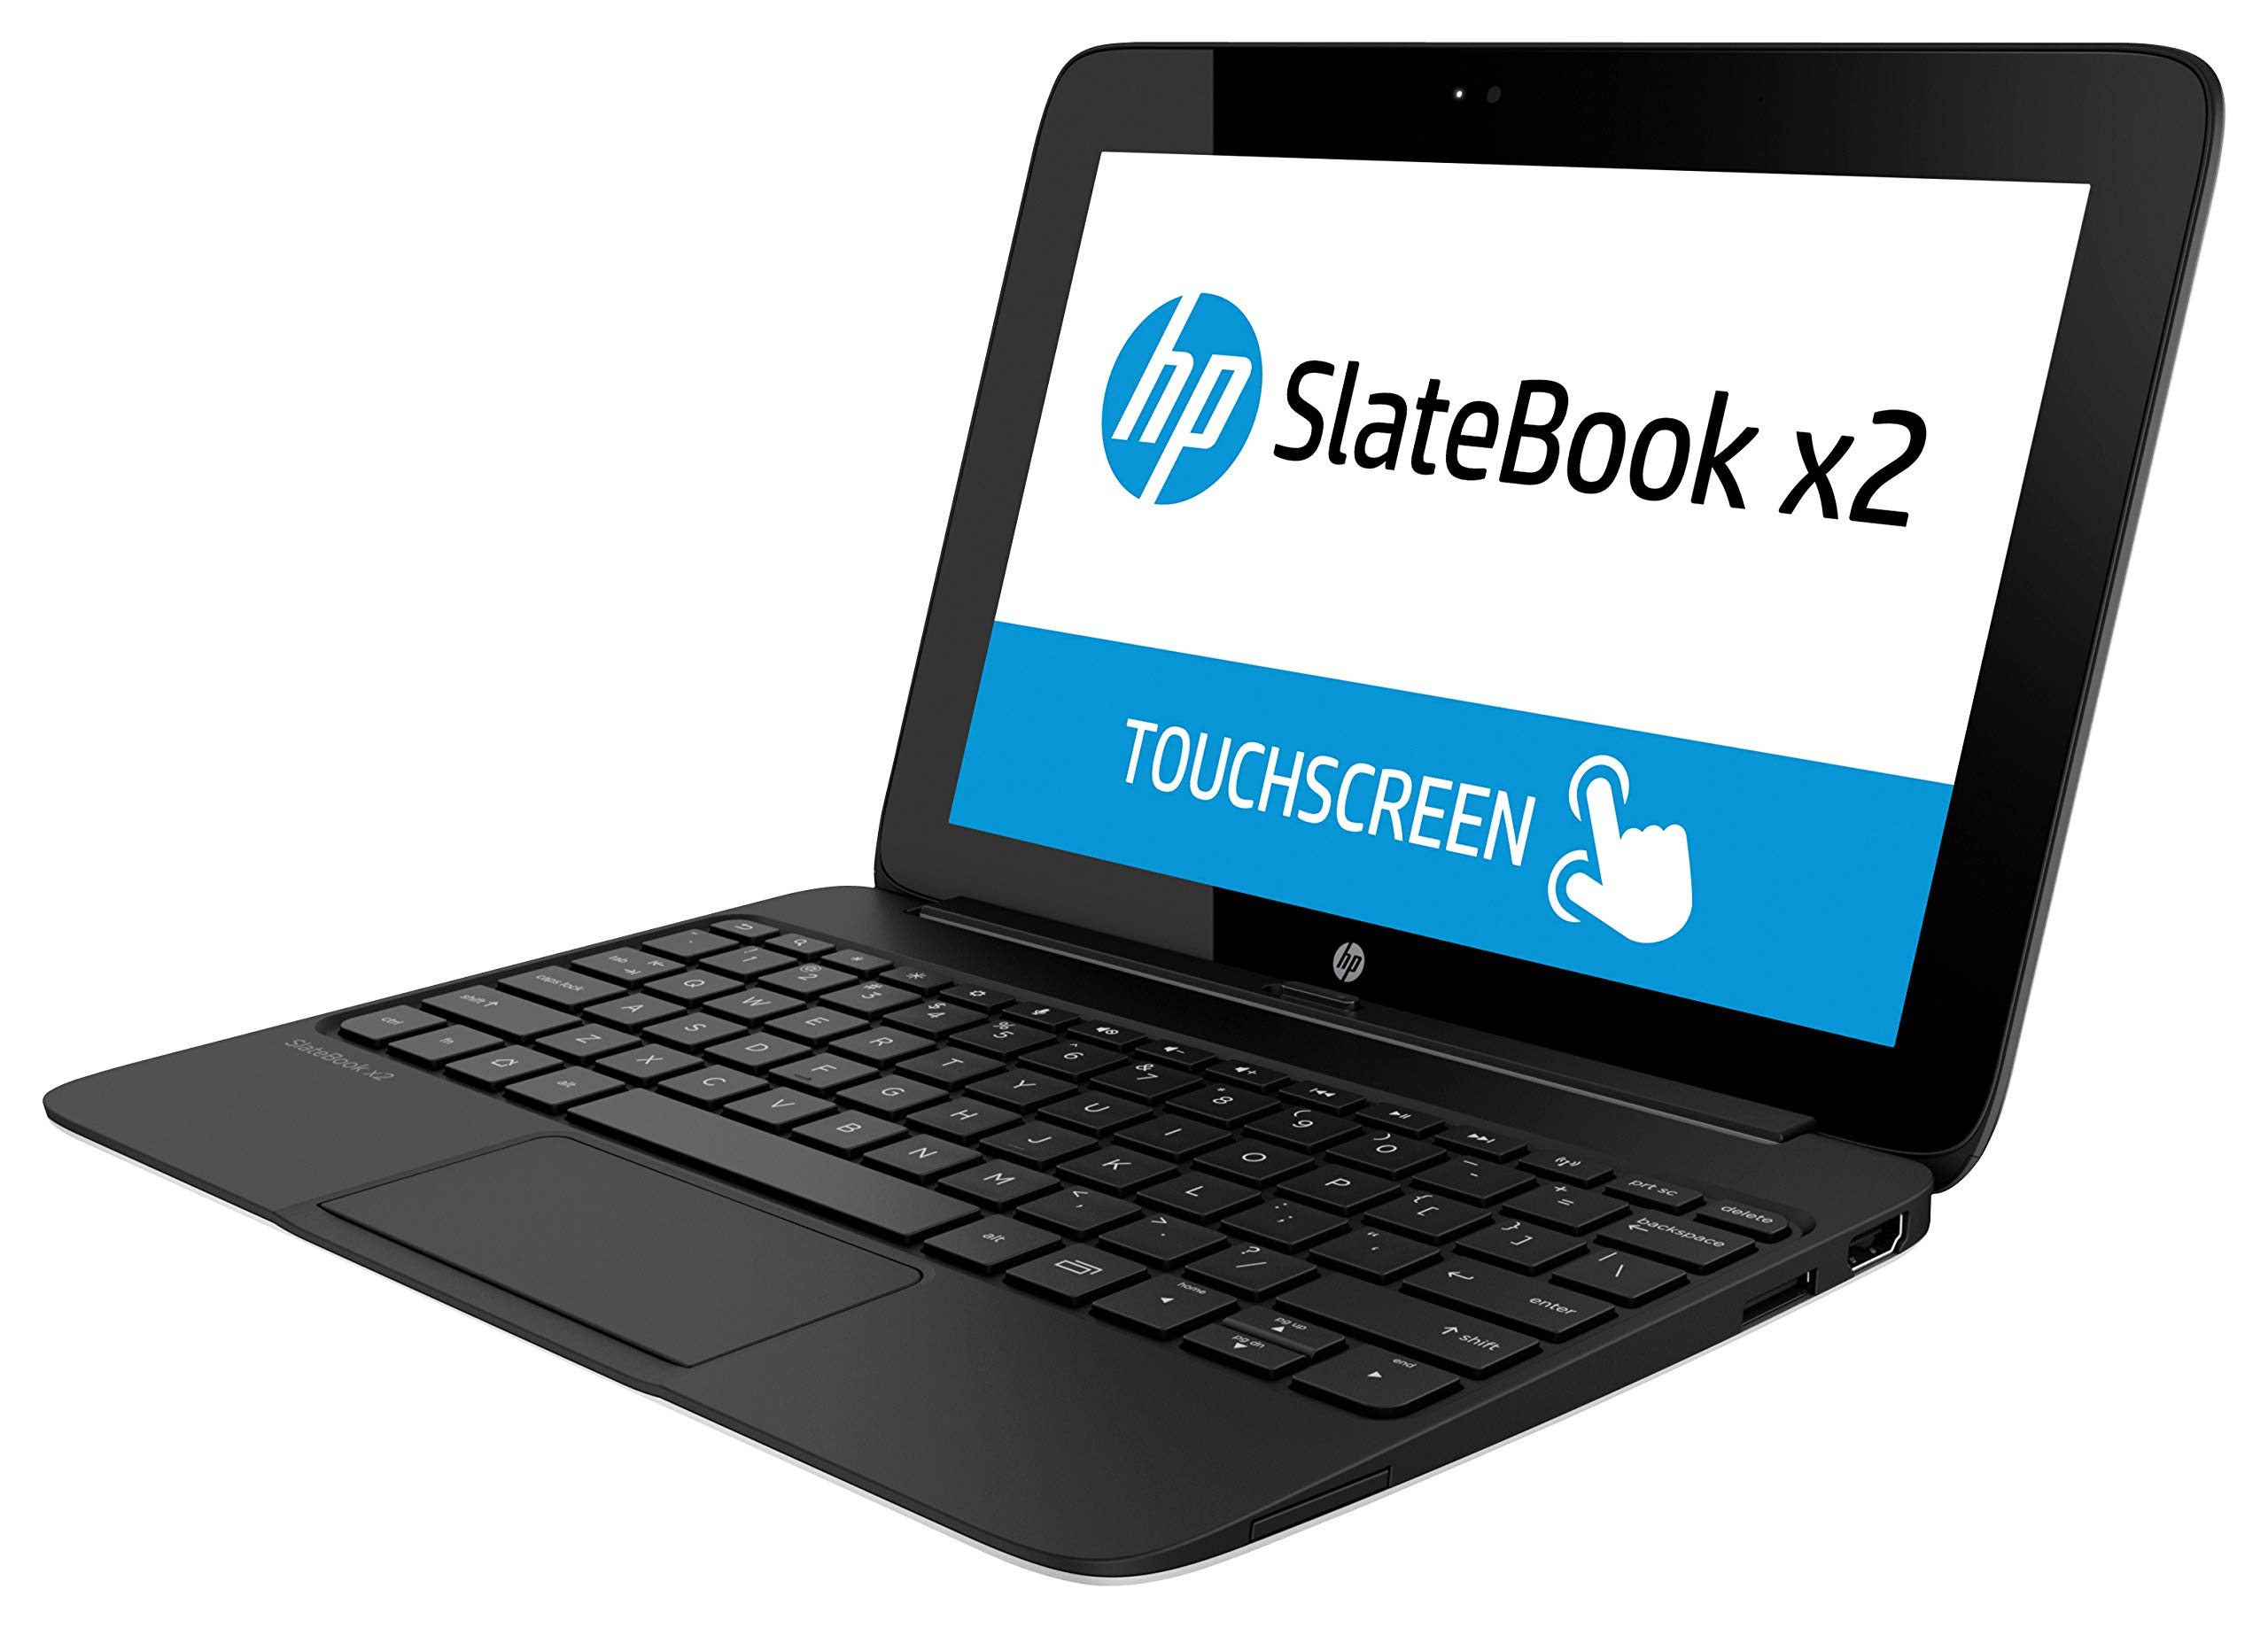 SlateBook 10-h006ru x2 PC